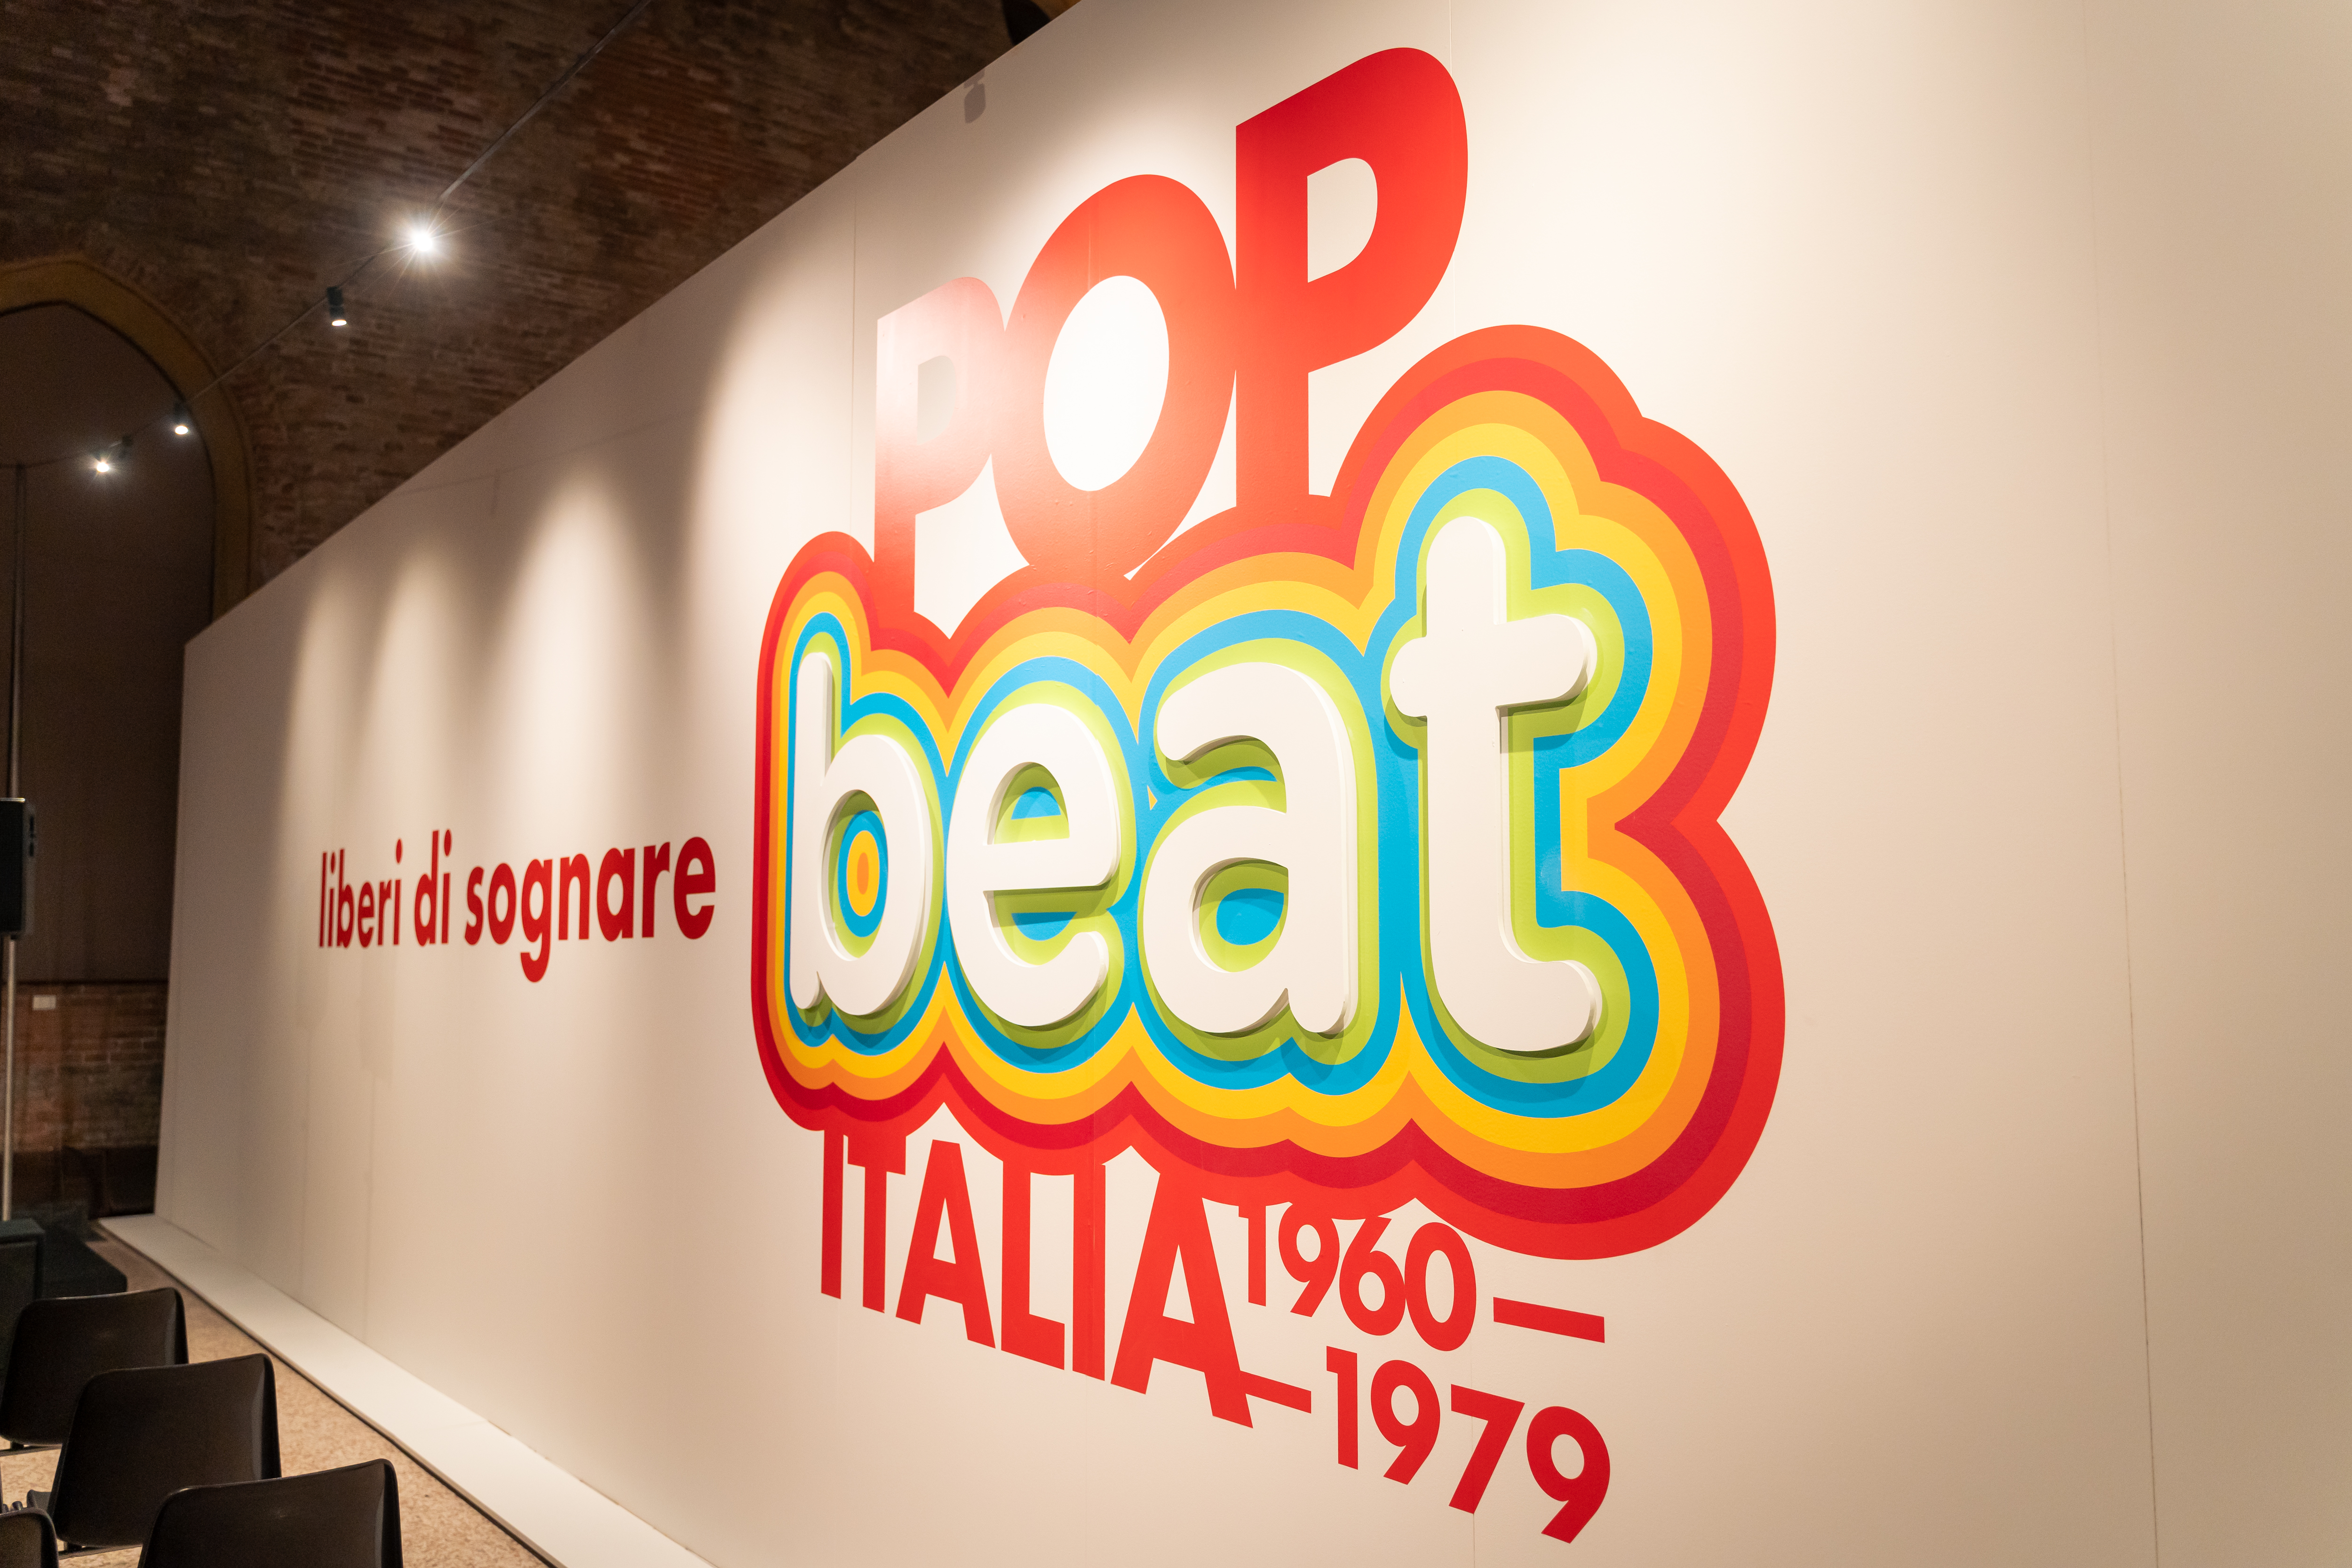 Pop/ beat. Italia 1960-1979